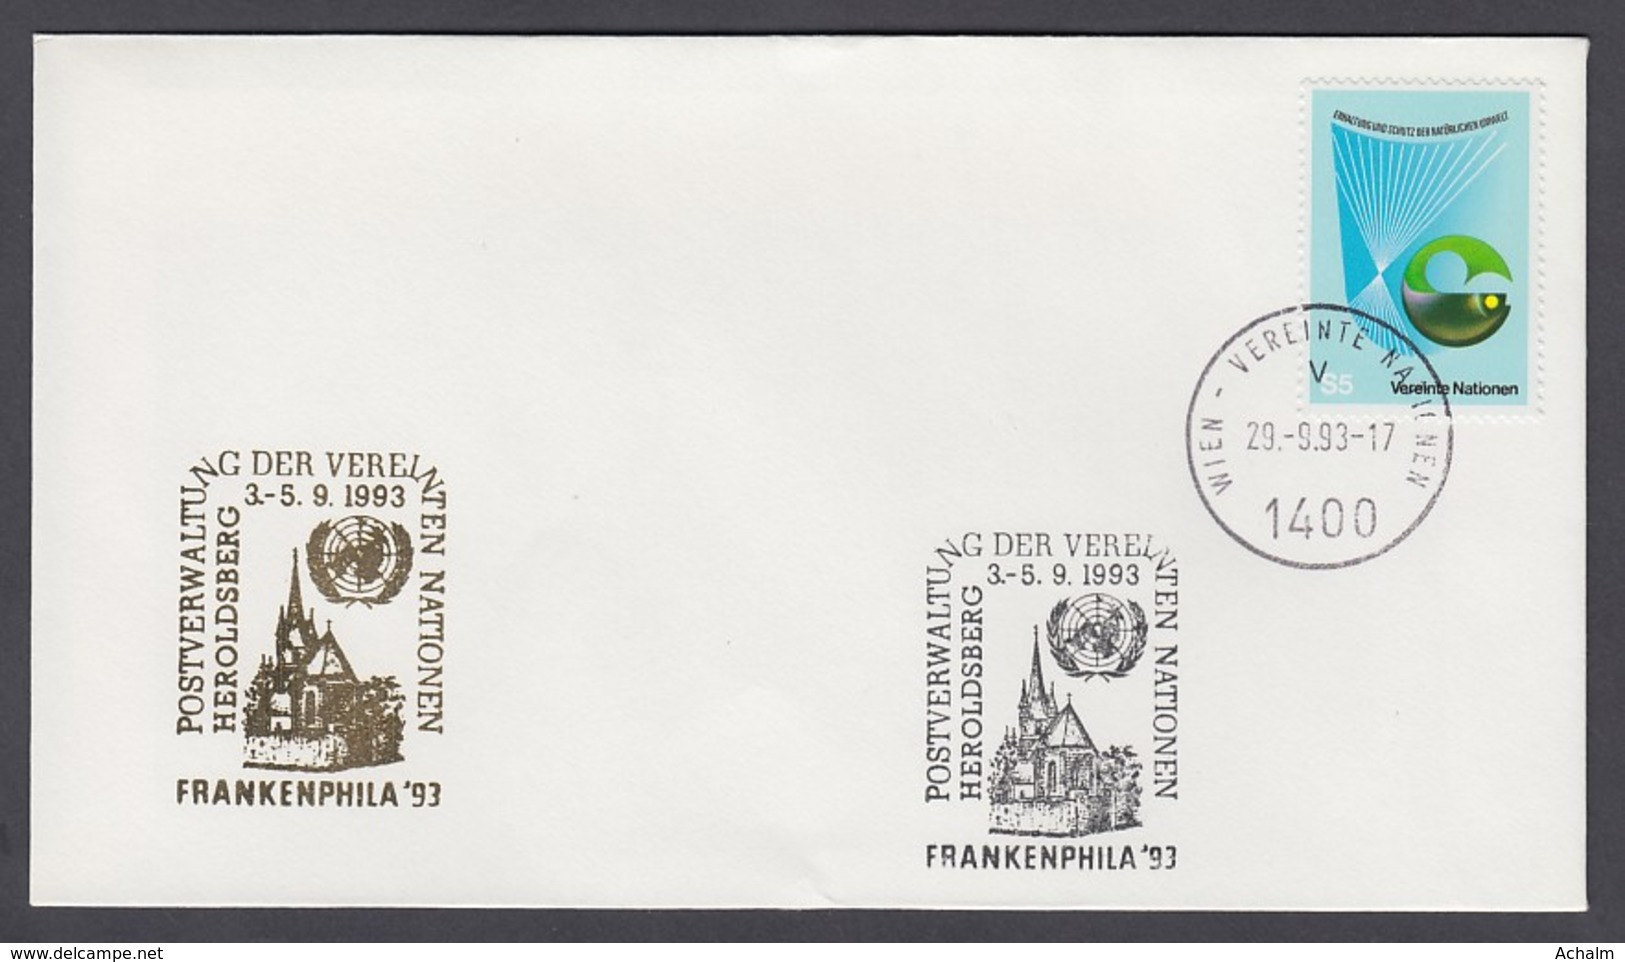 UNO Wien-UN Vienna - Beleg 1993 - MiNr. 27 - Gold-Sonderstempel - Frankenphila 93, Heroldsberg - UNO